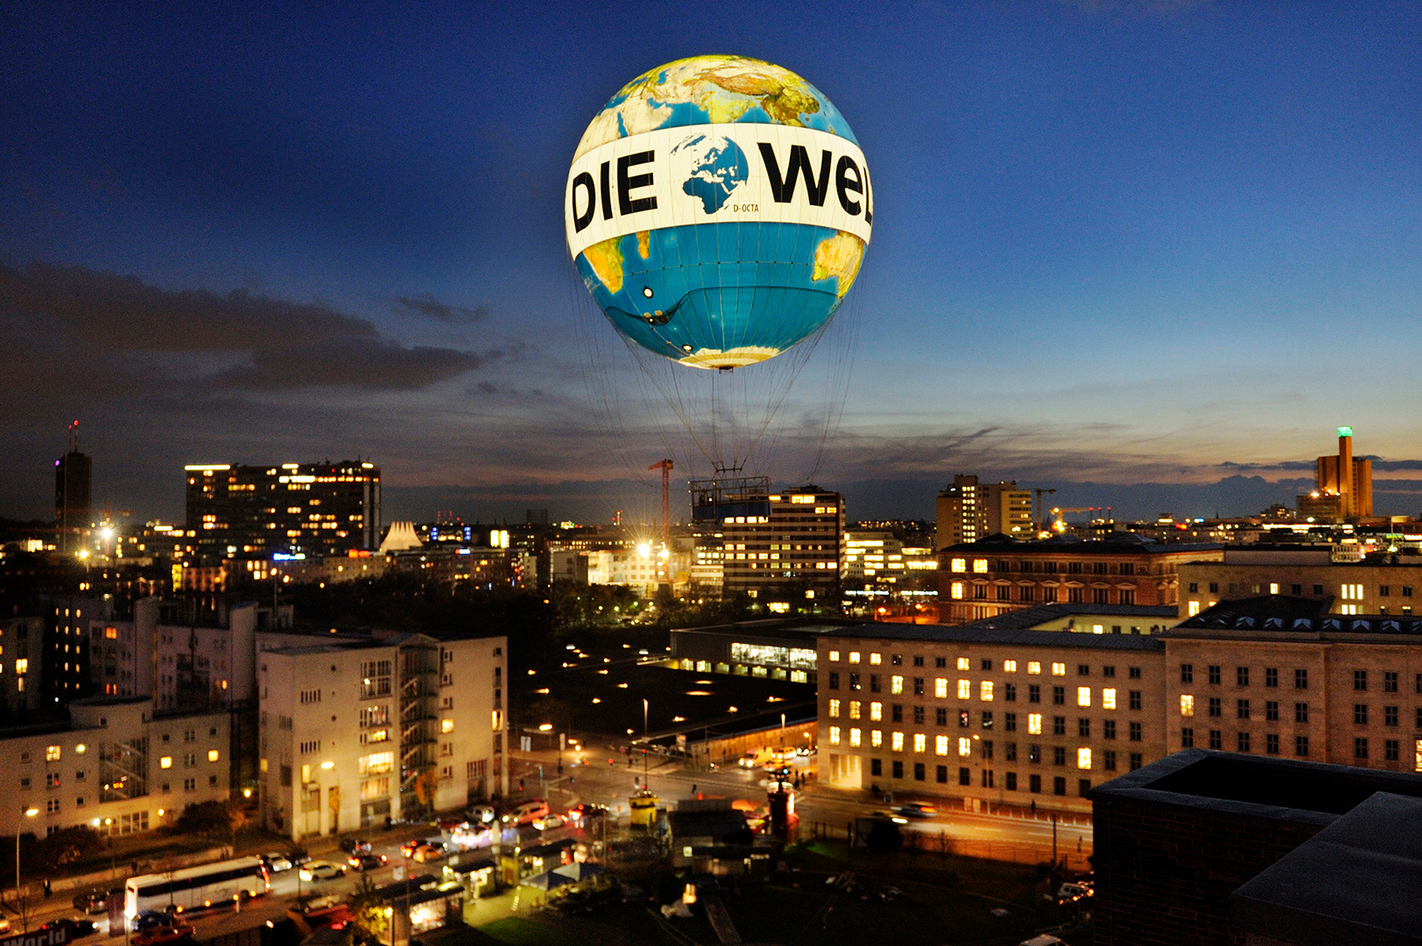 Berlin Ballonfahrt im Weltballon Berlin in Ca. 15 Minuten